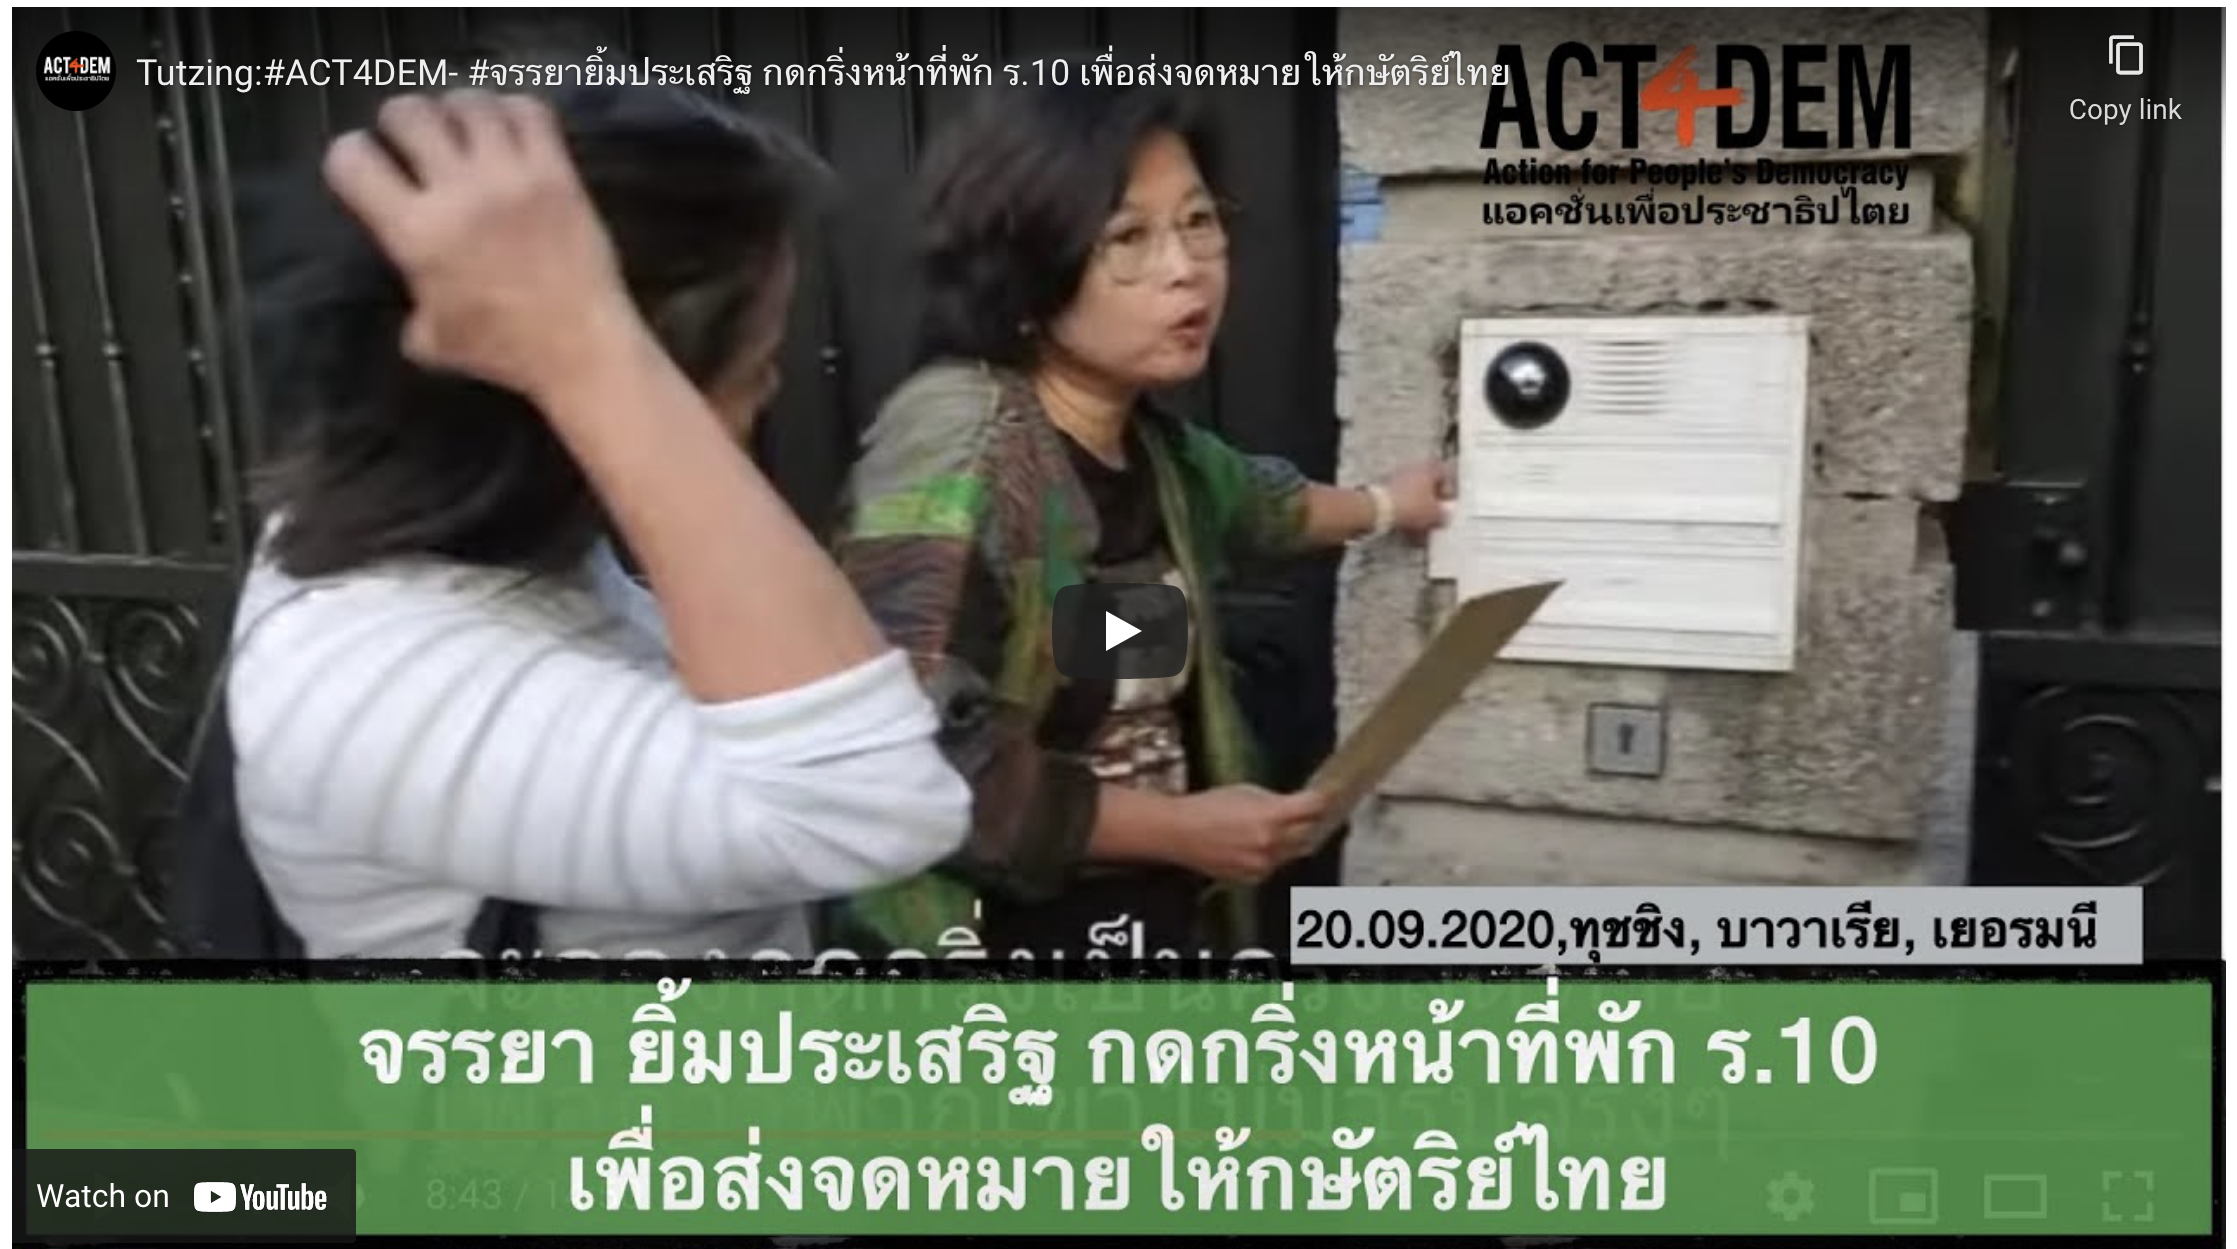 Tutzing:#ACT4DEM- #จรรยายิ้มประเสริฐ กดกริ่งหน้าที่พัก ร.10 เพื่อส่งจดหมายให้กษัตริย์ไทย